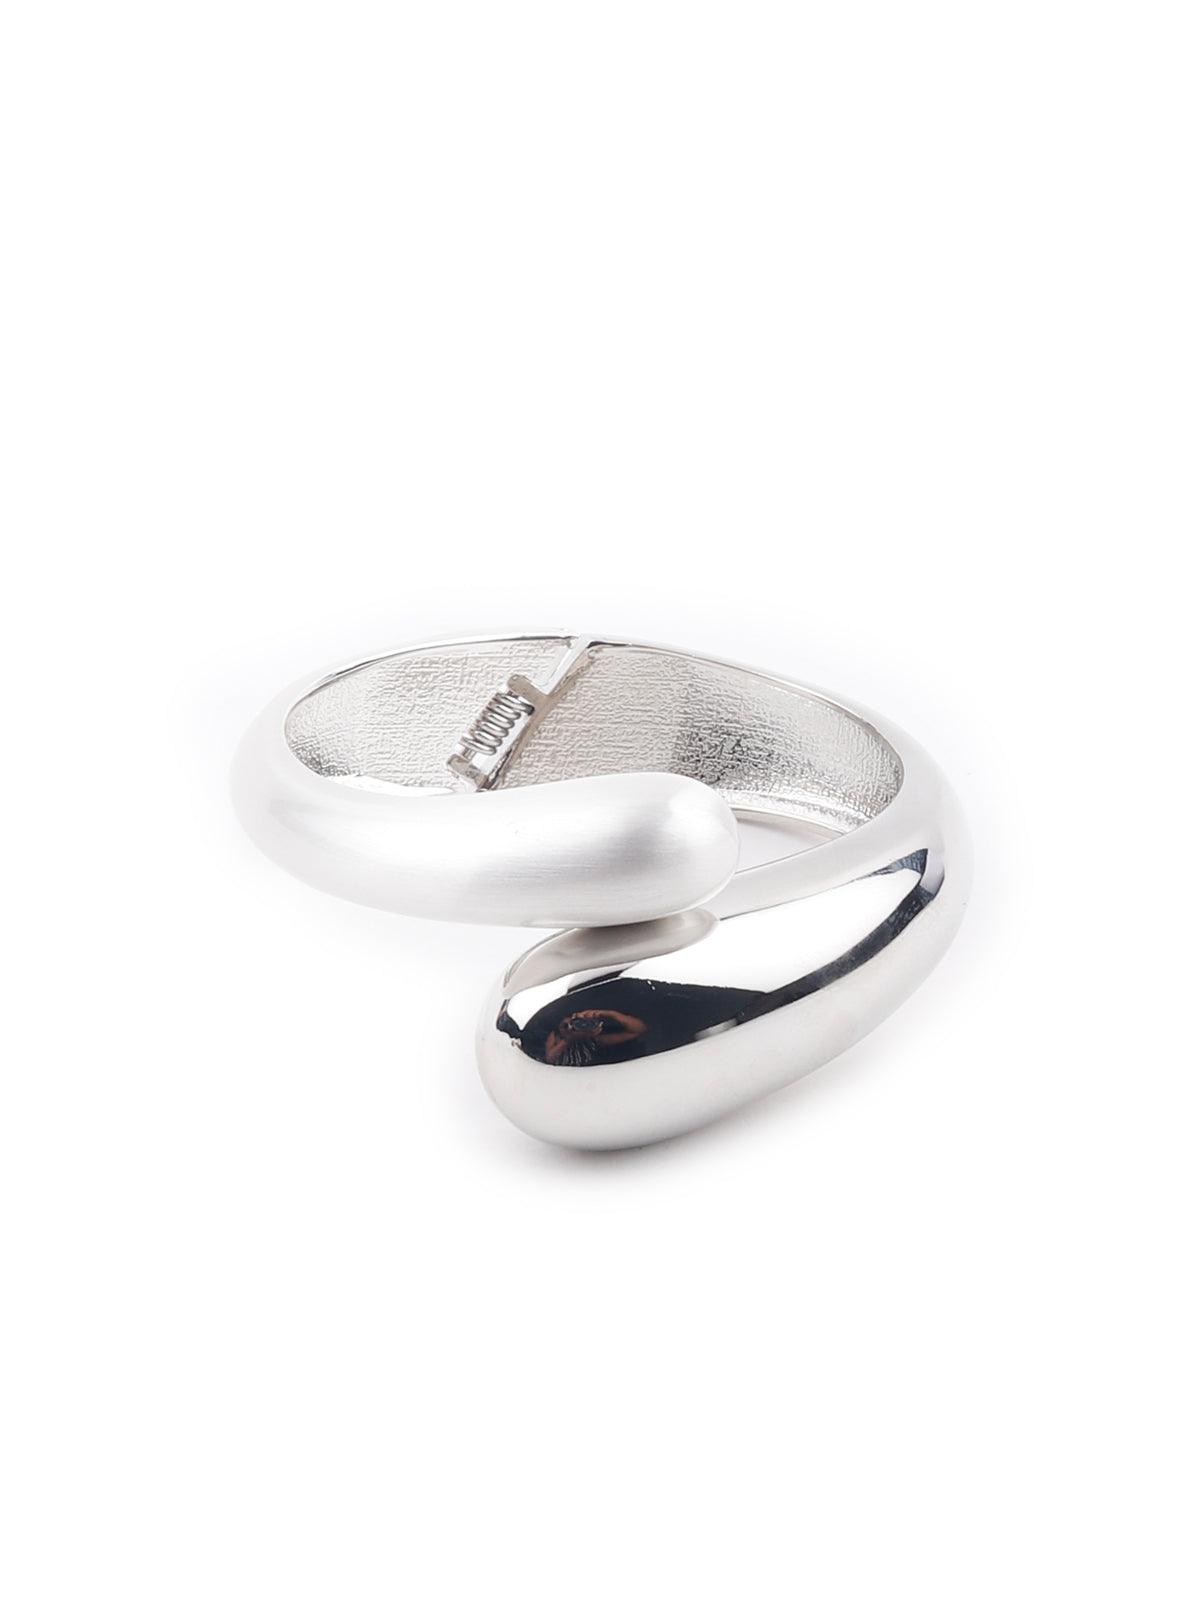 Women's Silver Subtle Bracelet For Women - Odette